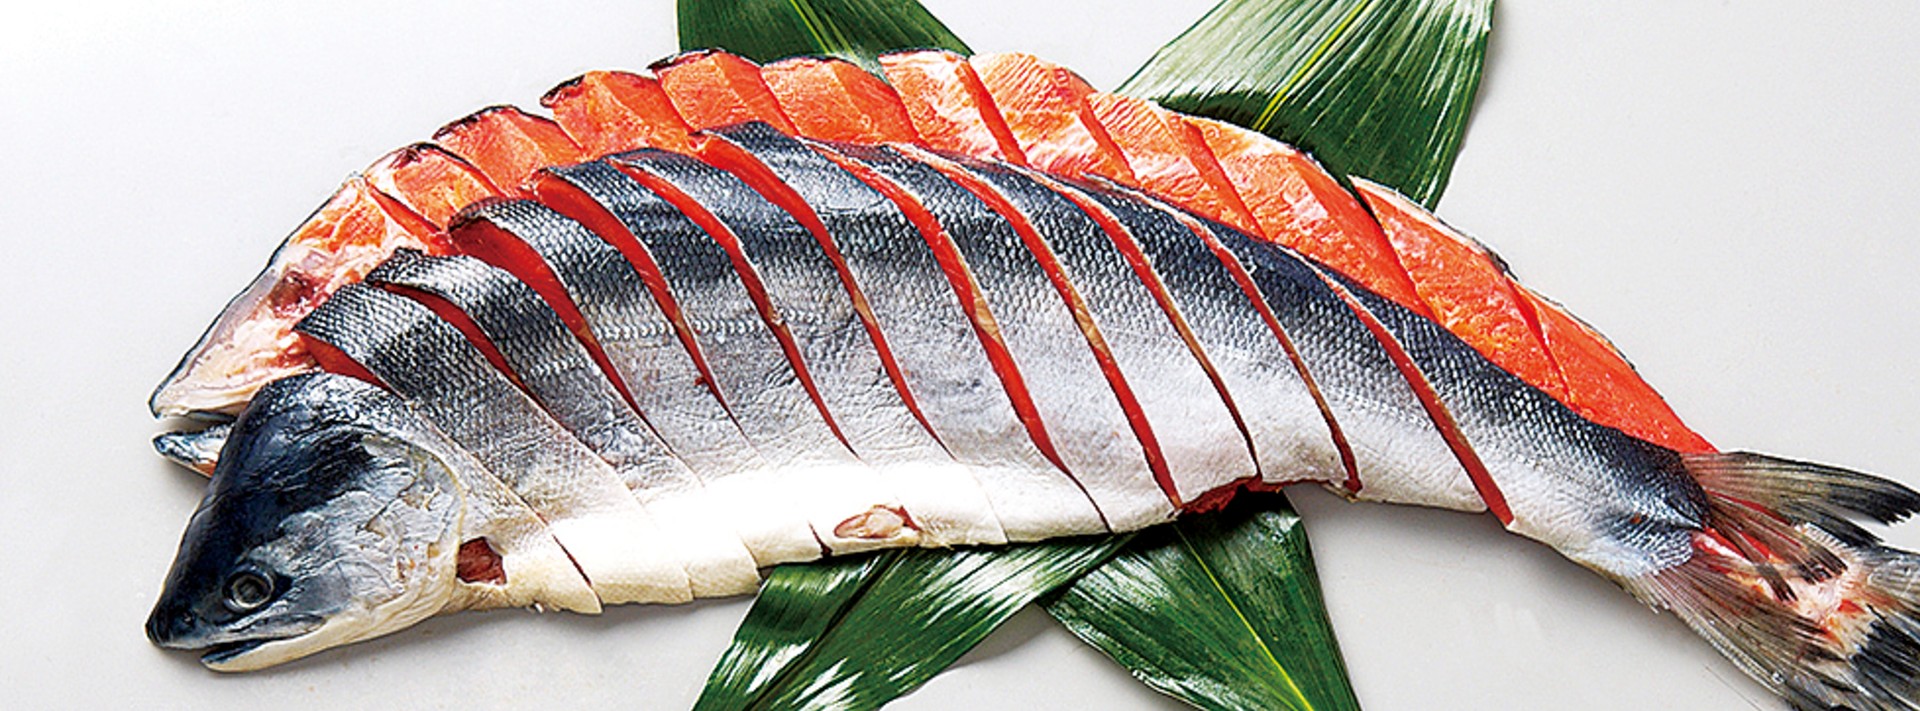 札幌のお土産で海鮮のおすすめ20選　6位:鮭